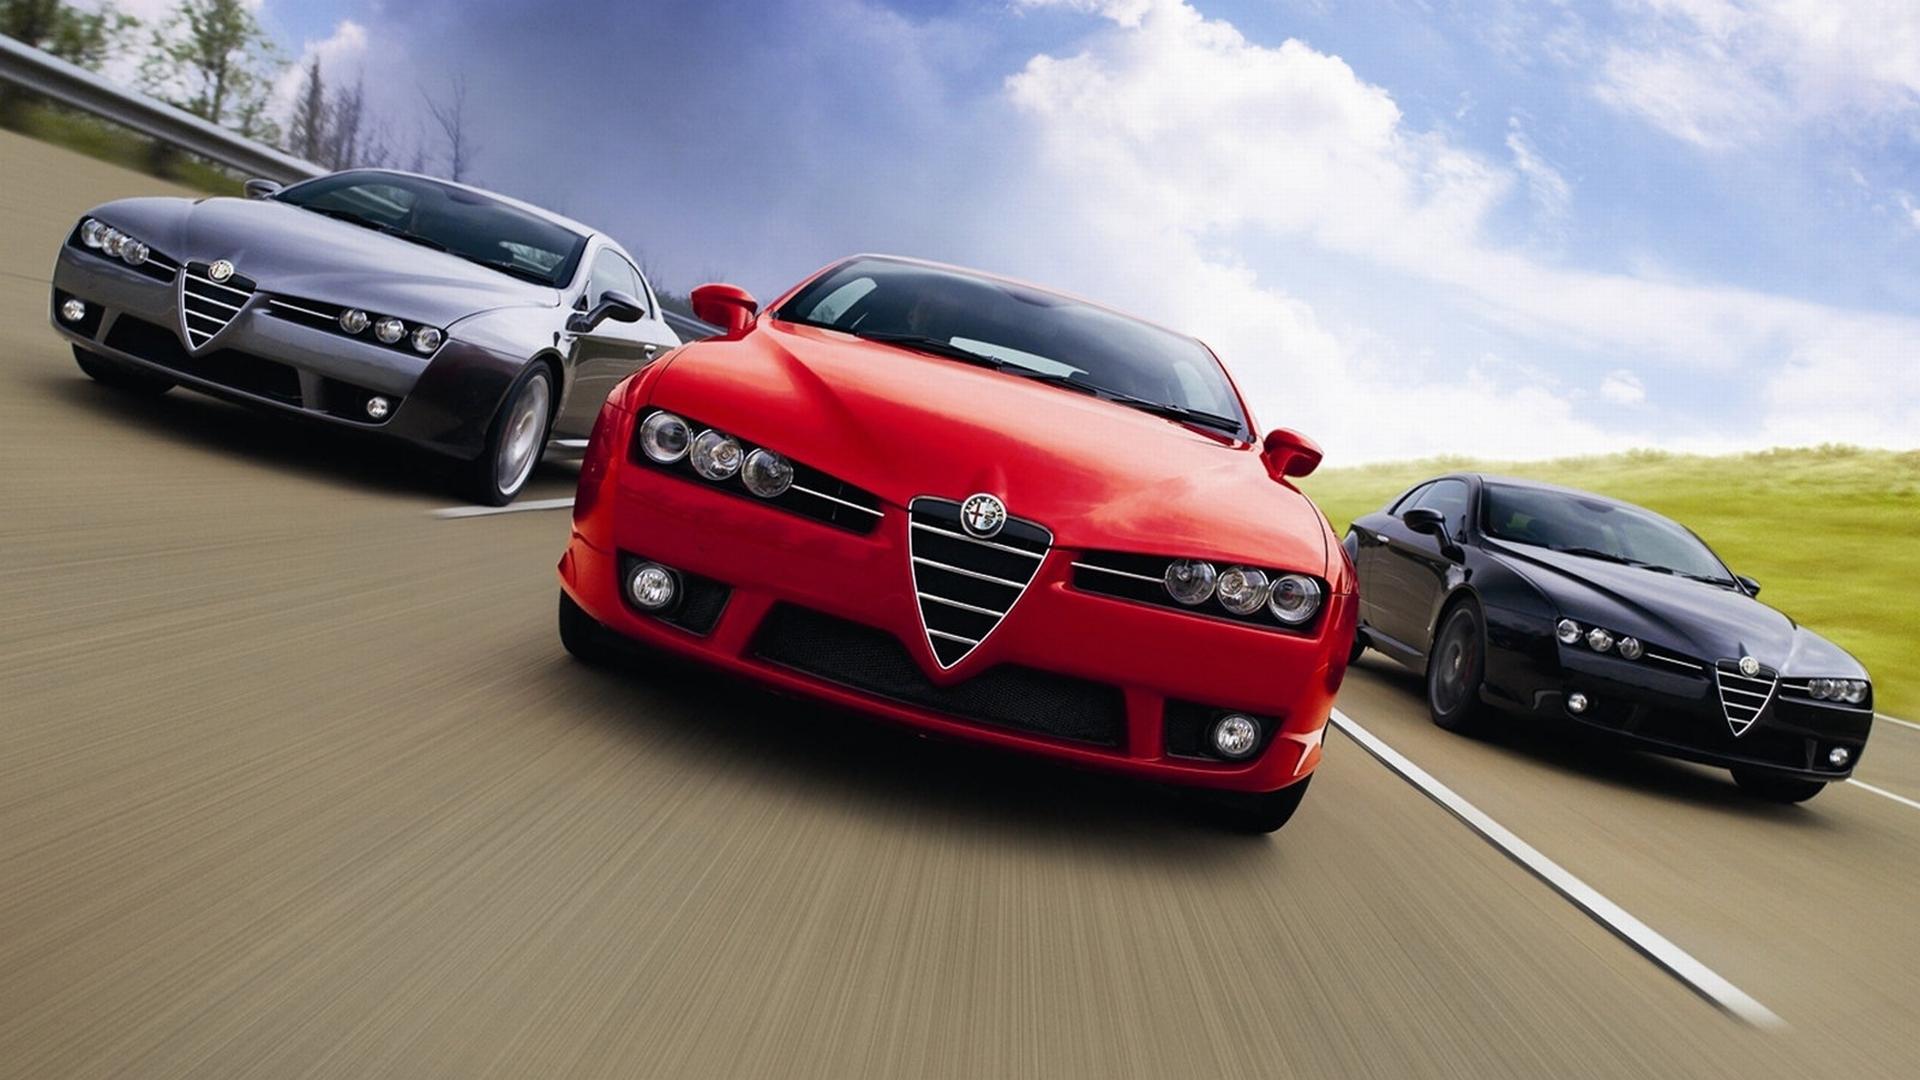 Alfa Romeo Brera at 1280 x 960 size wallpapers HD quality